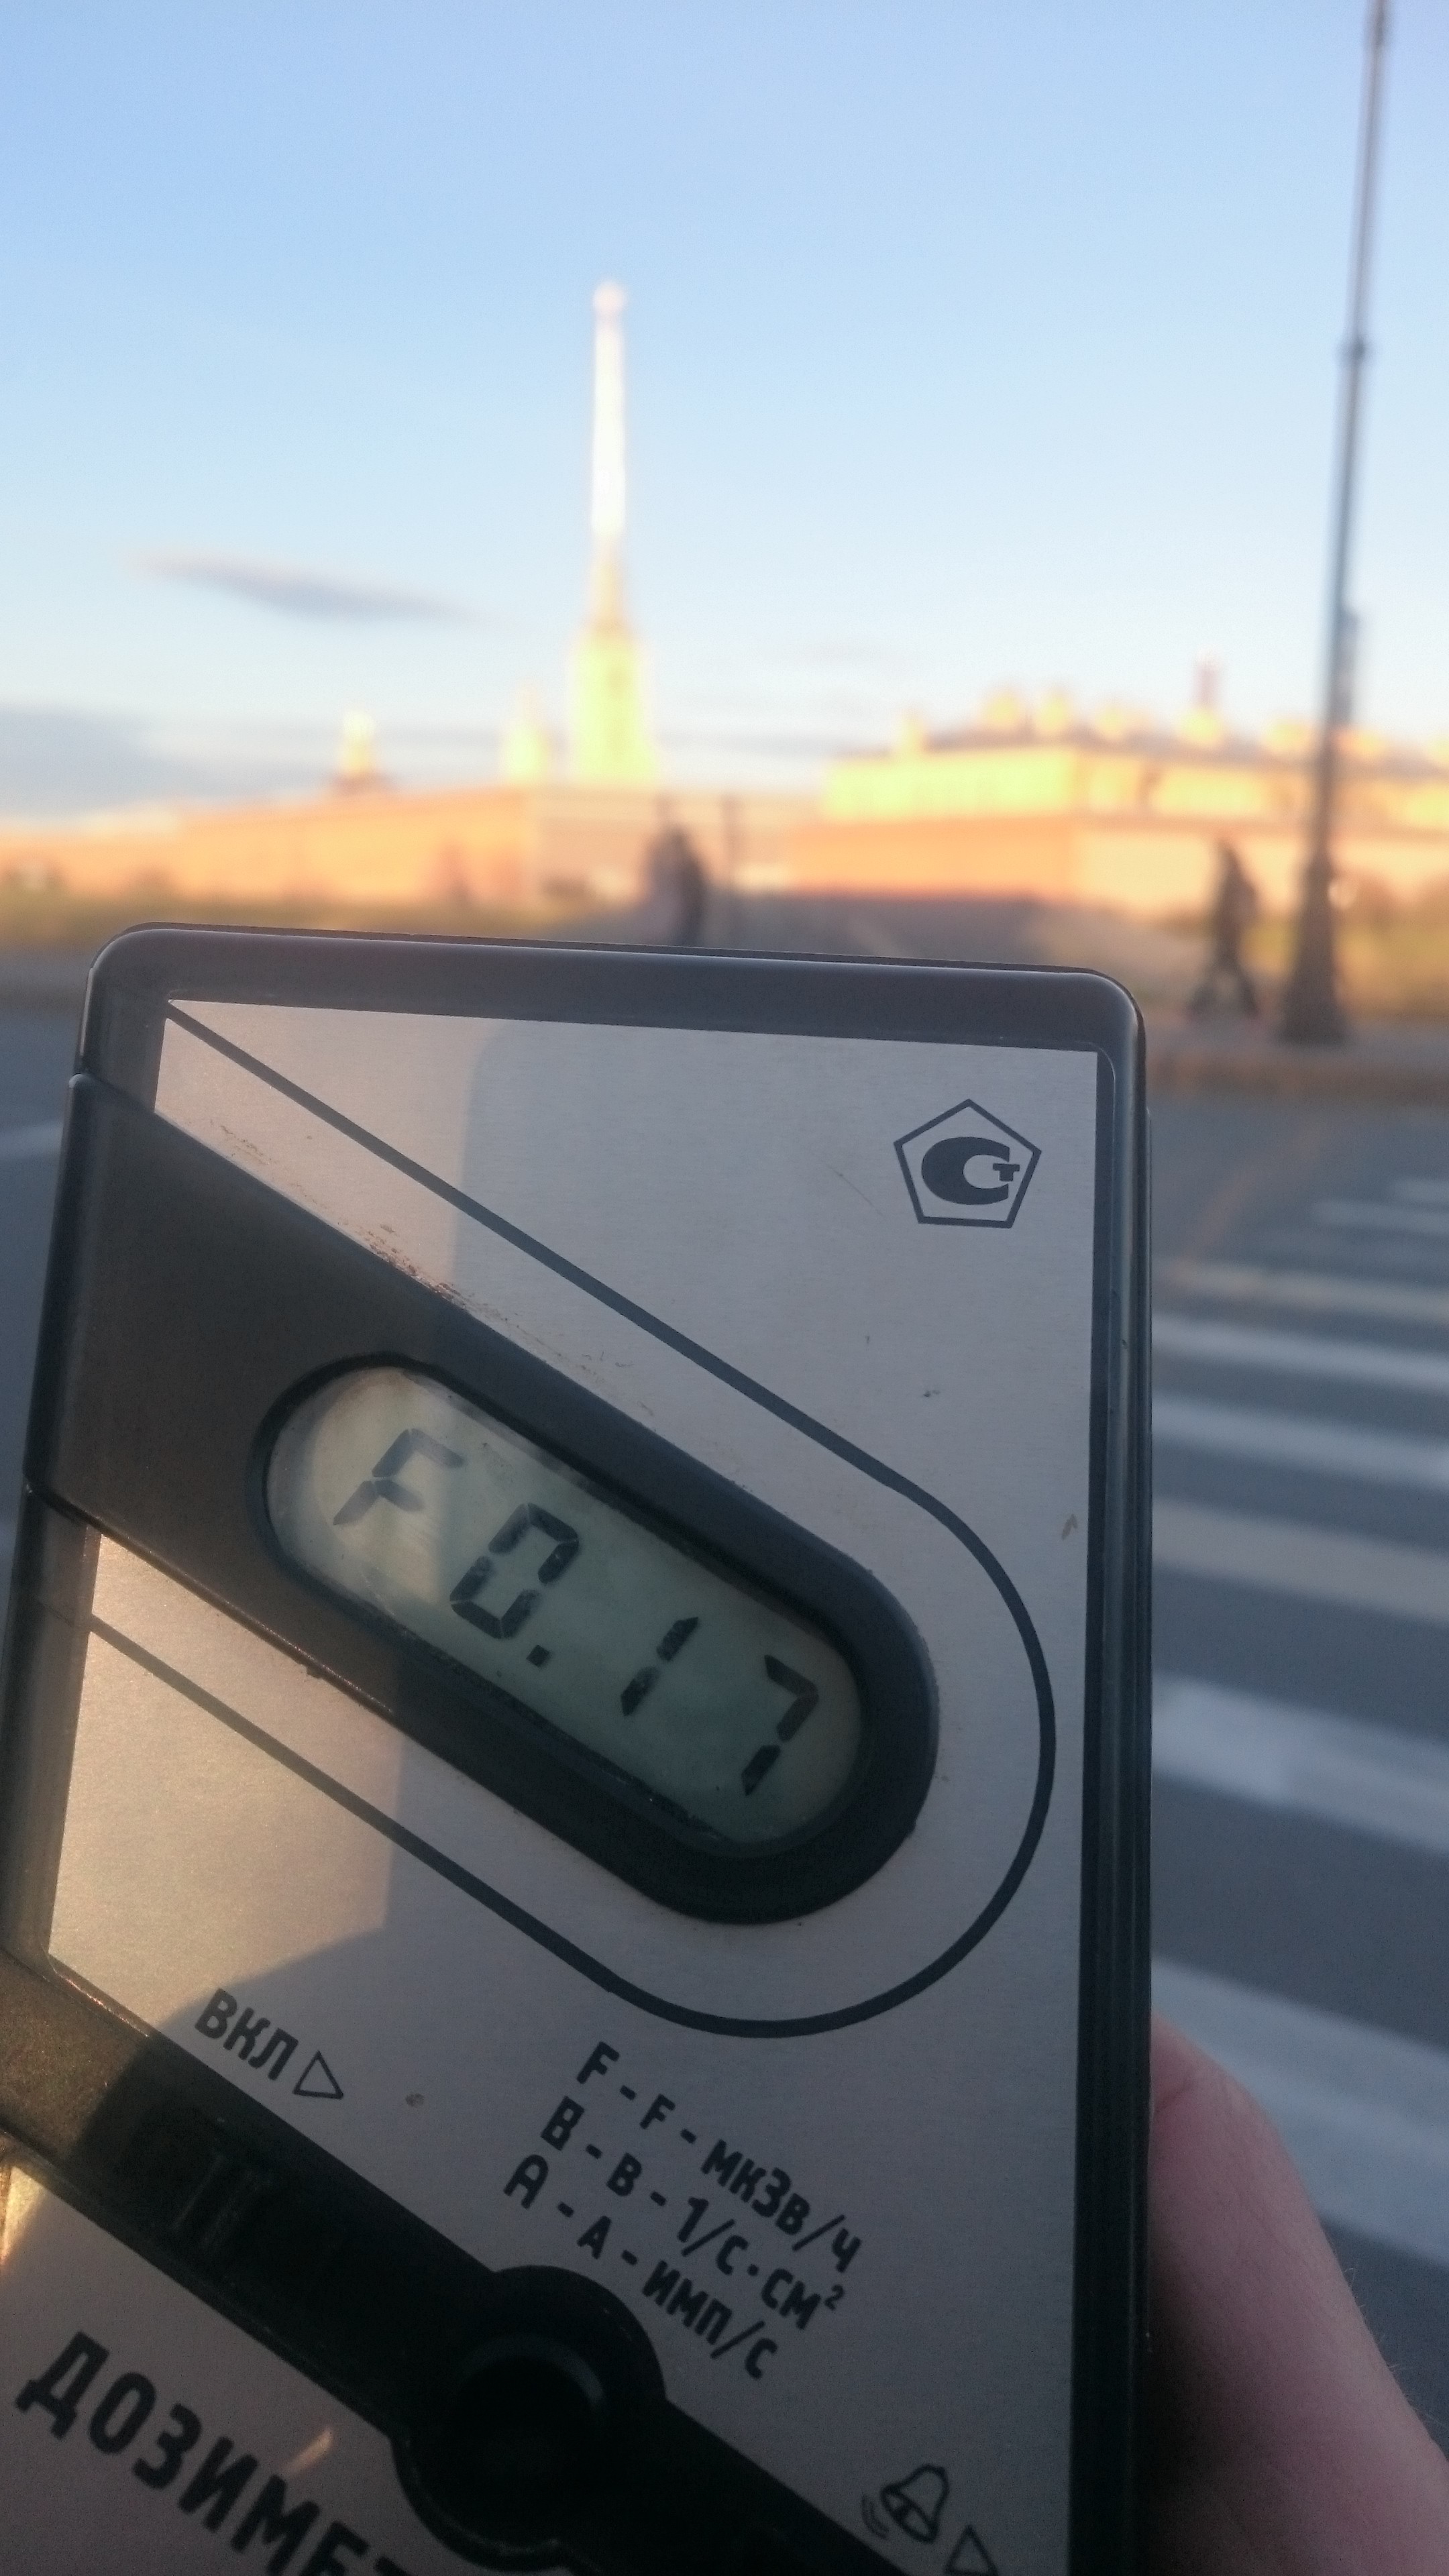 Точка измерения МЭД гамма-излучени на Кронверкской набережной  в Санкт-Петербурге